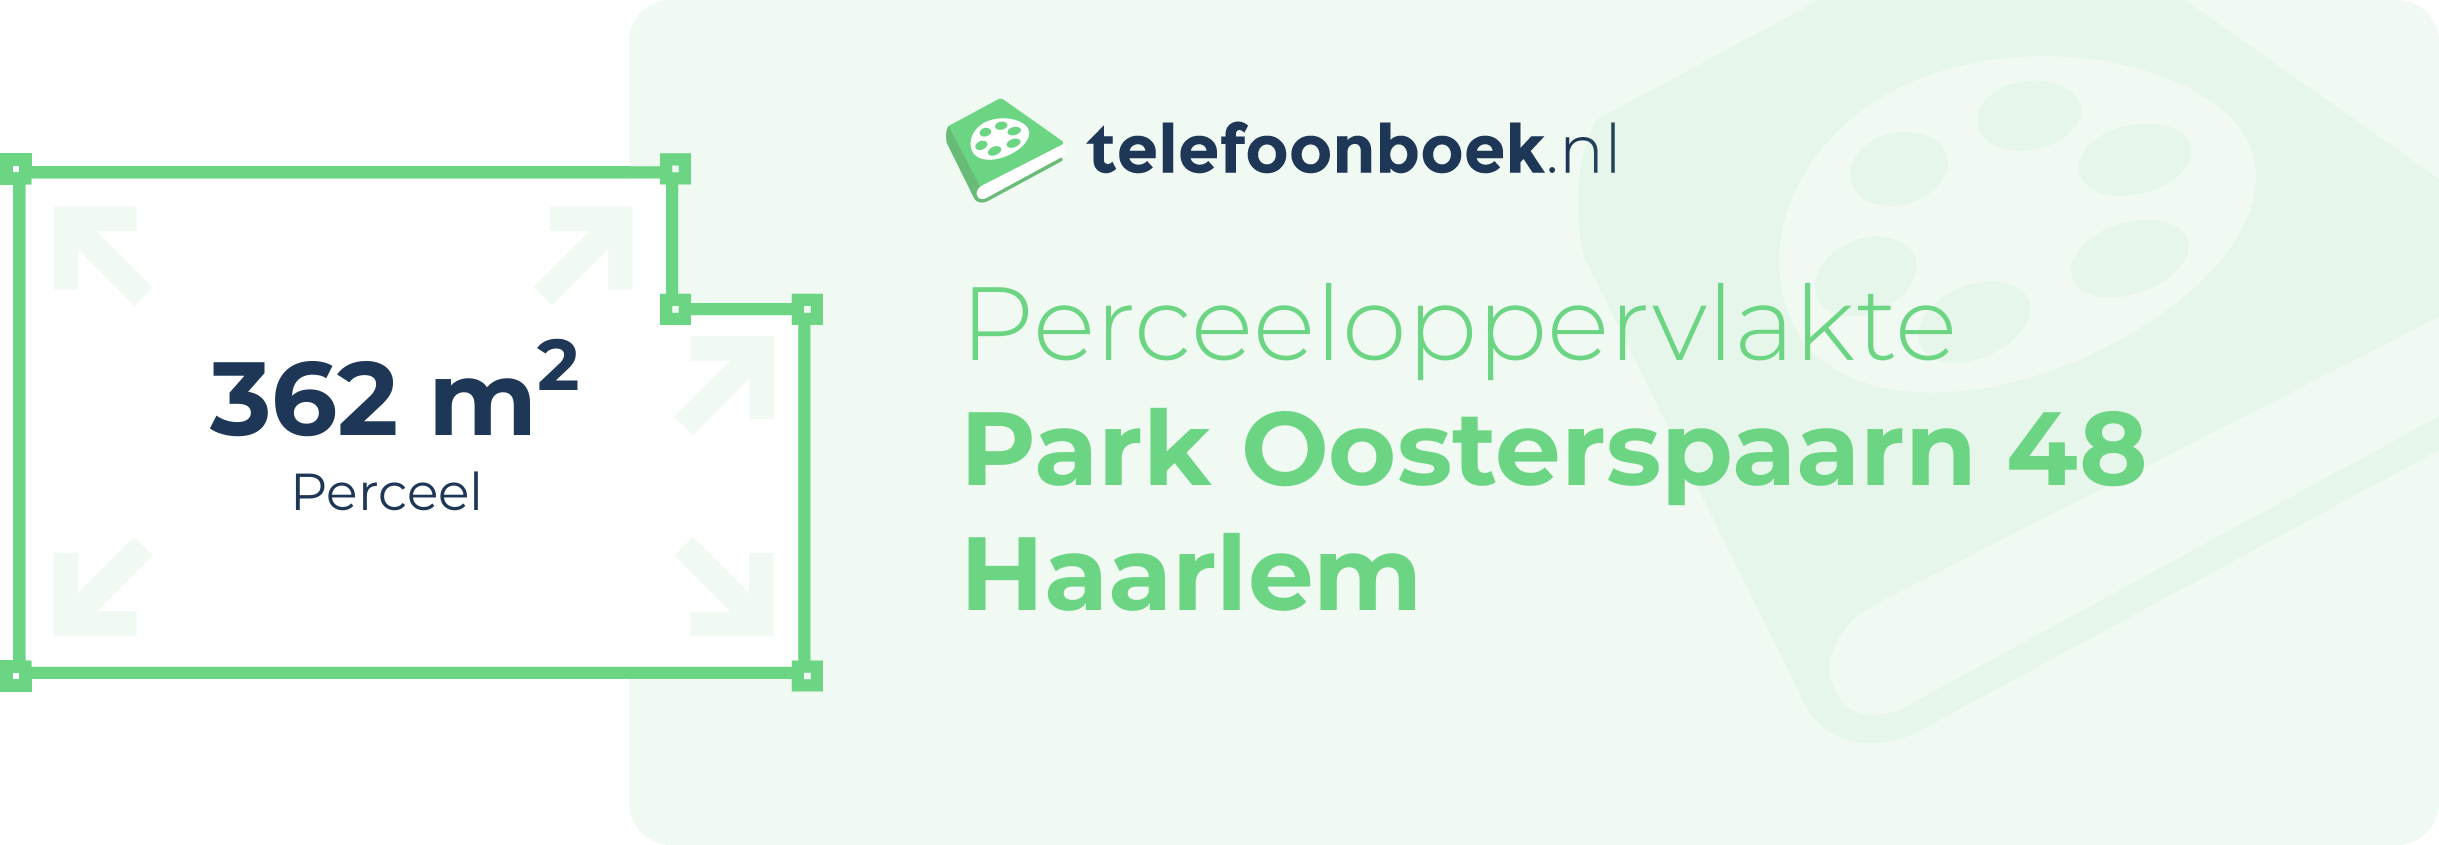 Perceeloppervlakte Park Oosterspaarn 48 Haarlem